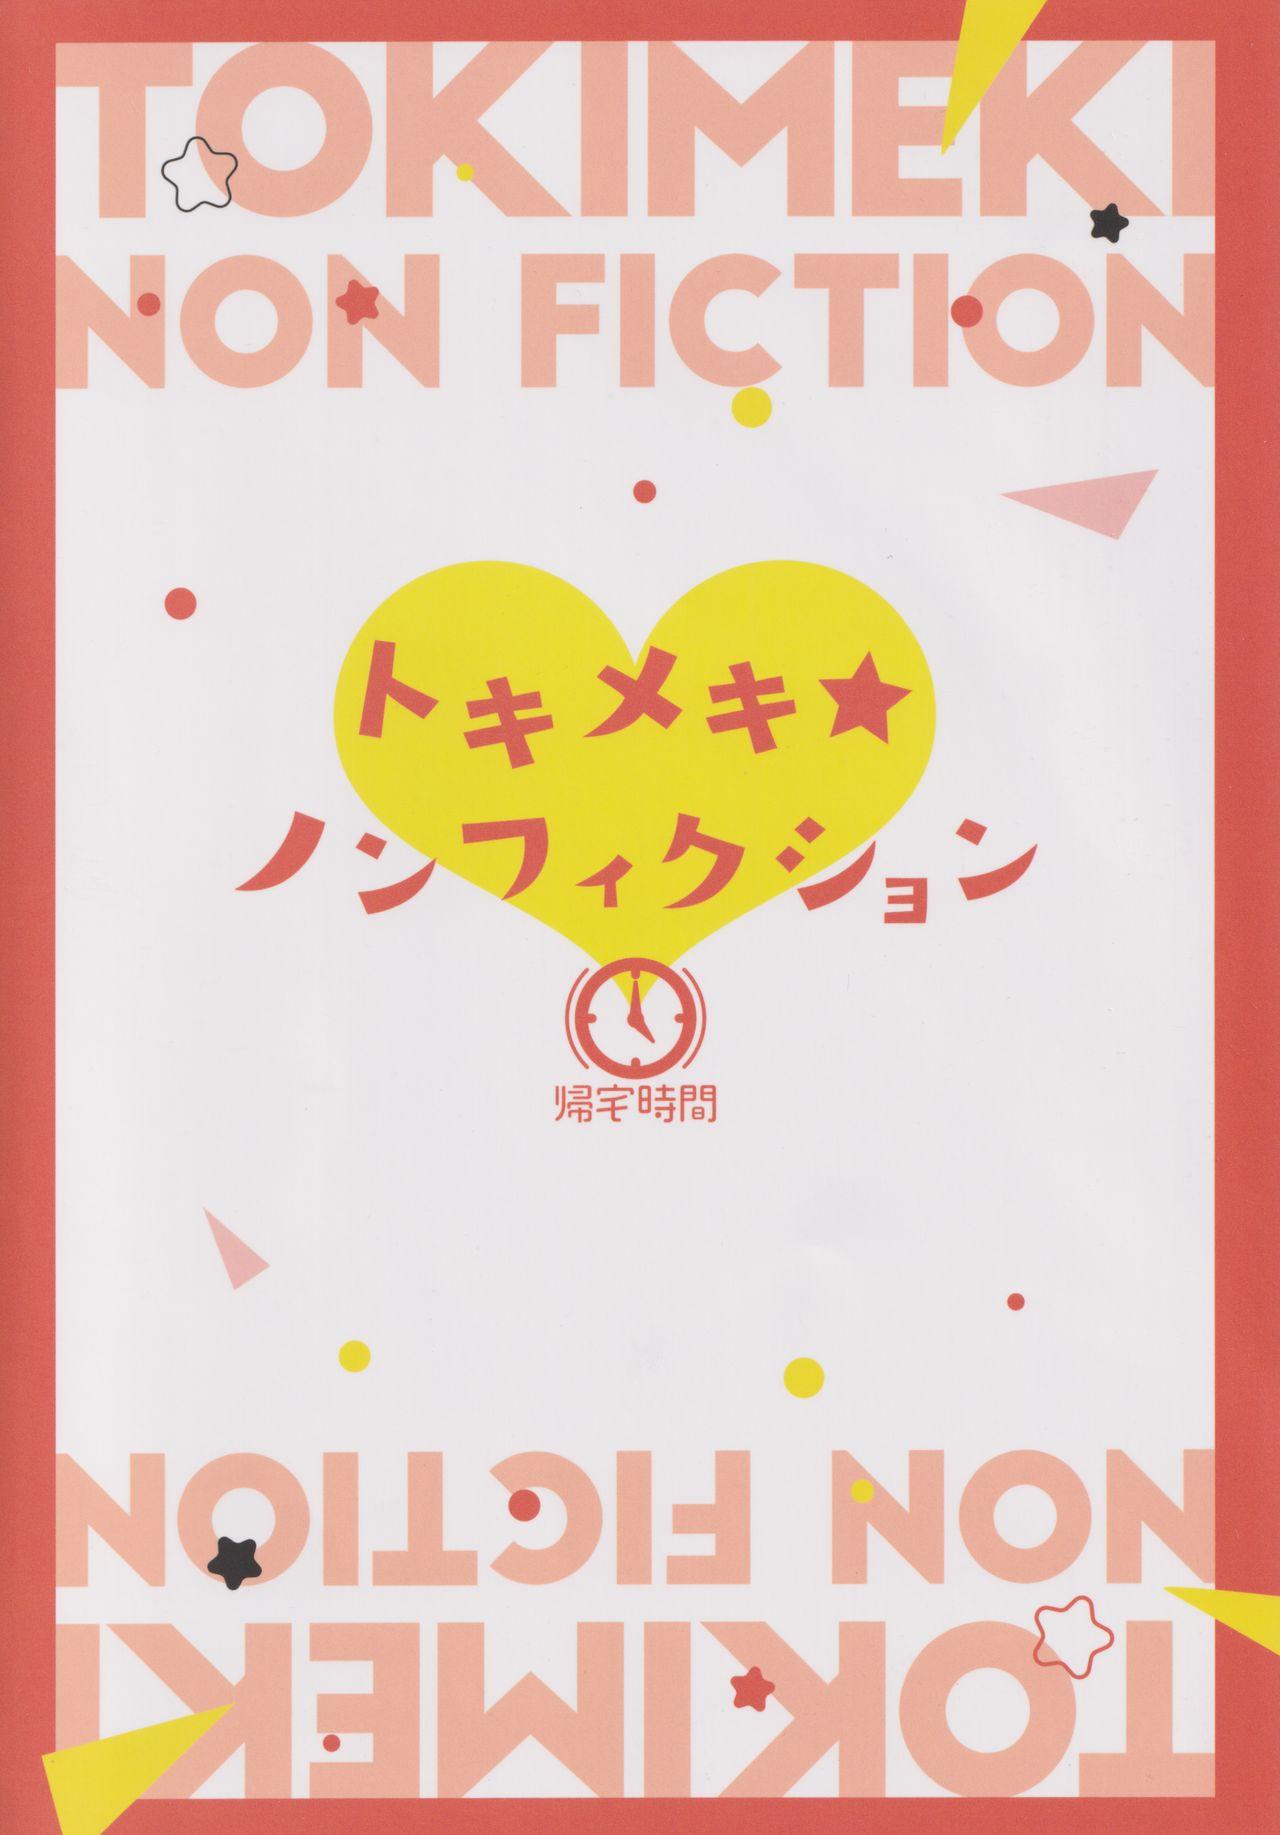 Tokimeki Nonfiction 26